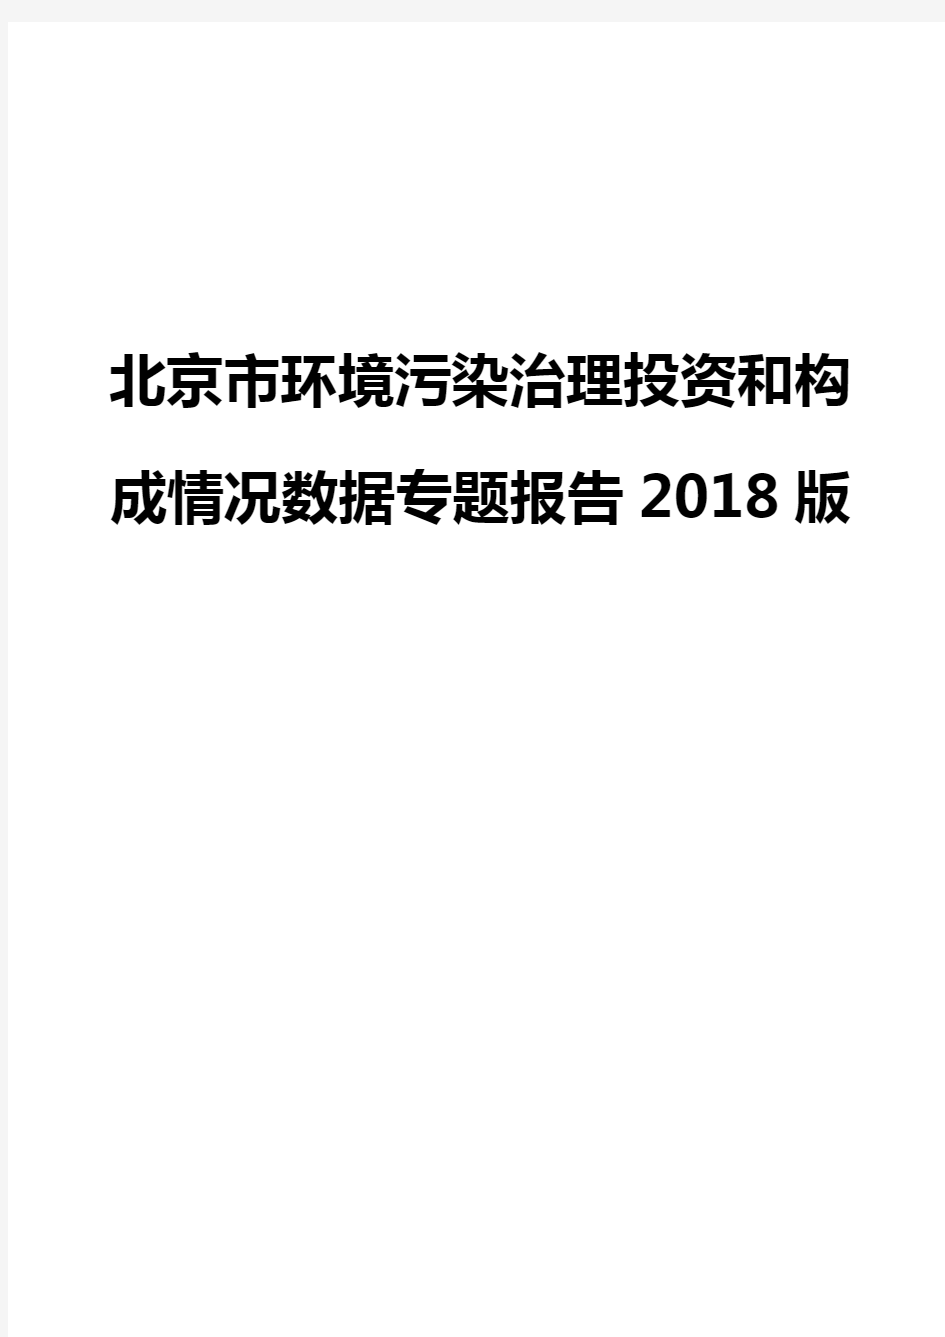 北京市环境污染治理投资和构成情况数据专题报告2018版